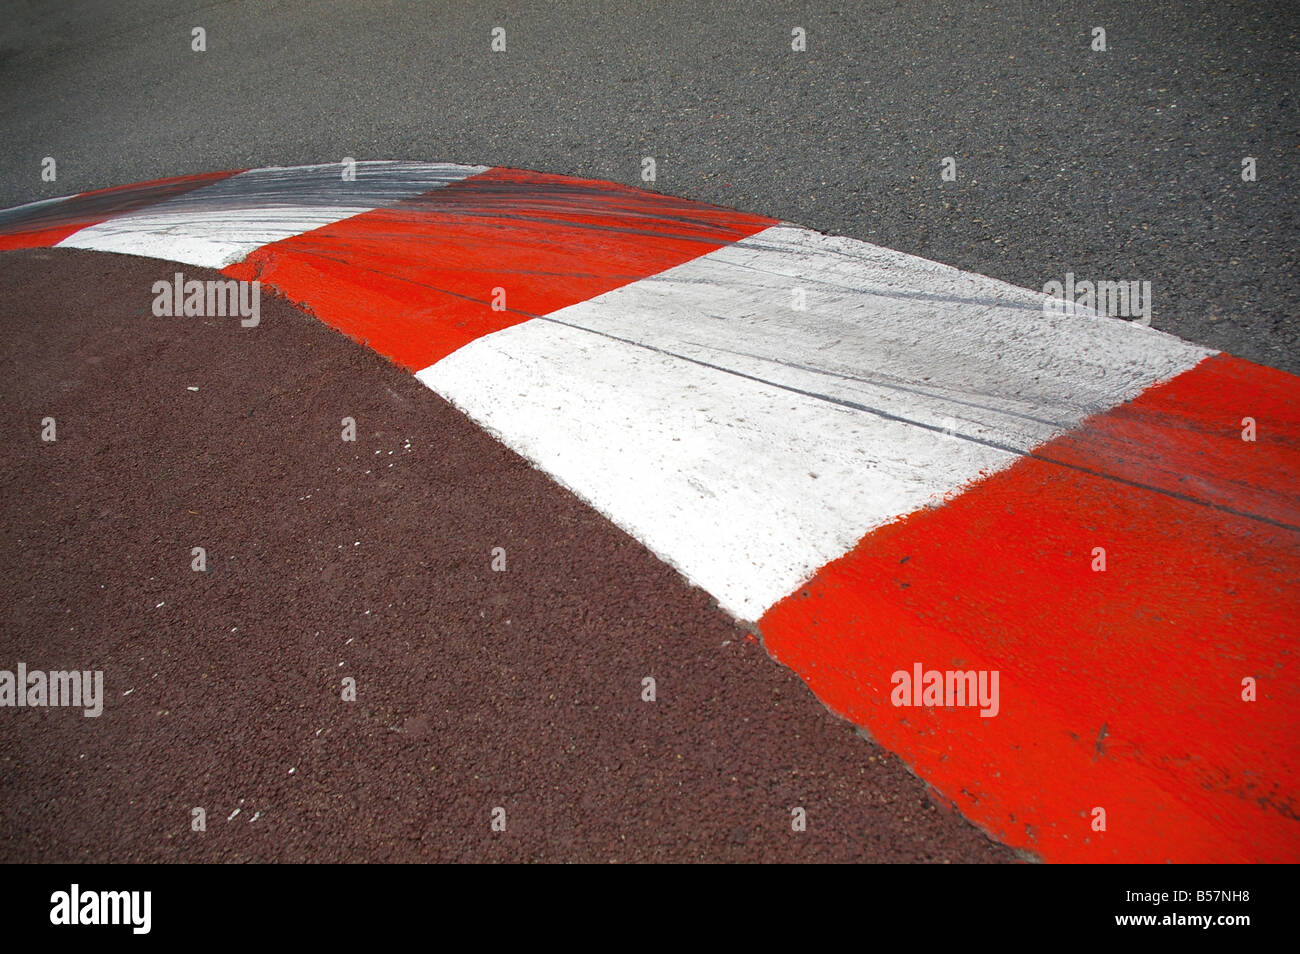 Freiner sur la Formule Un Grand Prix circuit de course à Monaco Banque D'Images